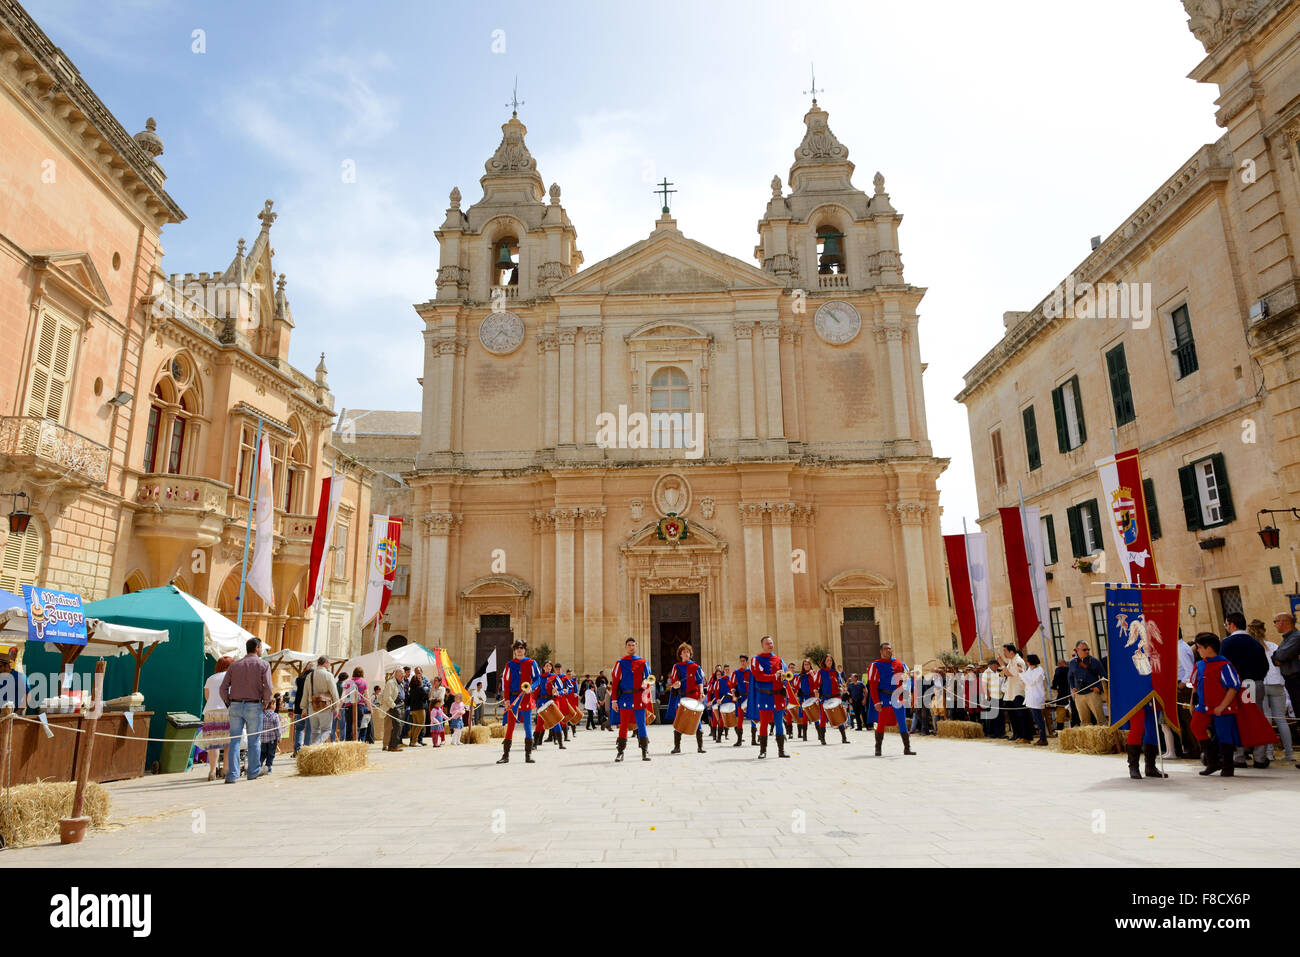 Die Mdina Mittelalterfest und Touristen, Mdina, Malta Stockfoto